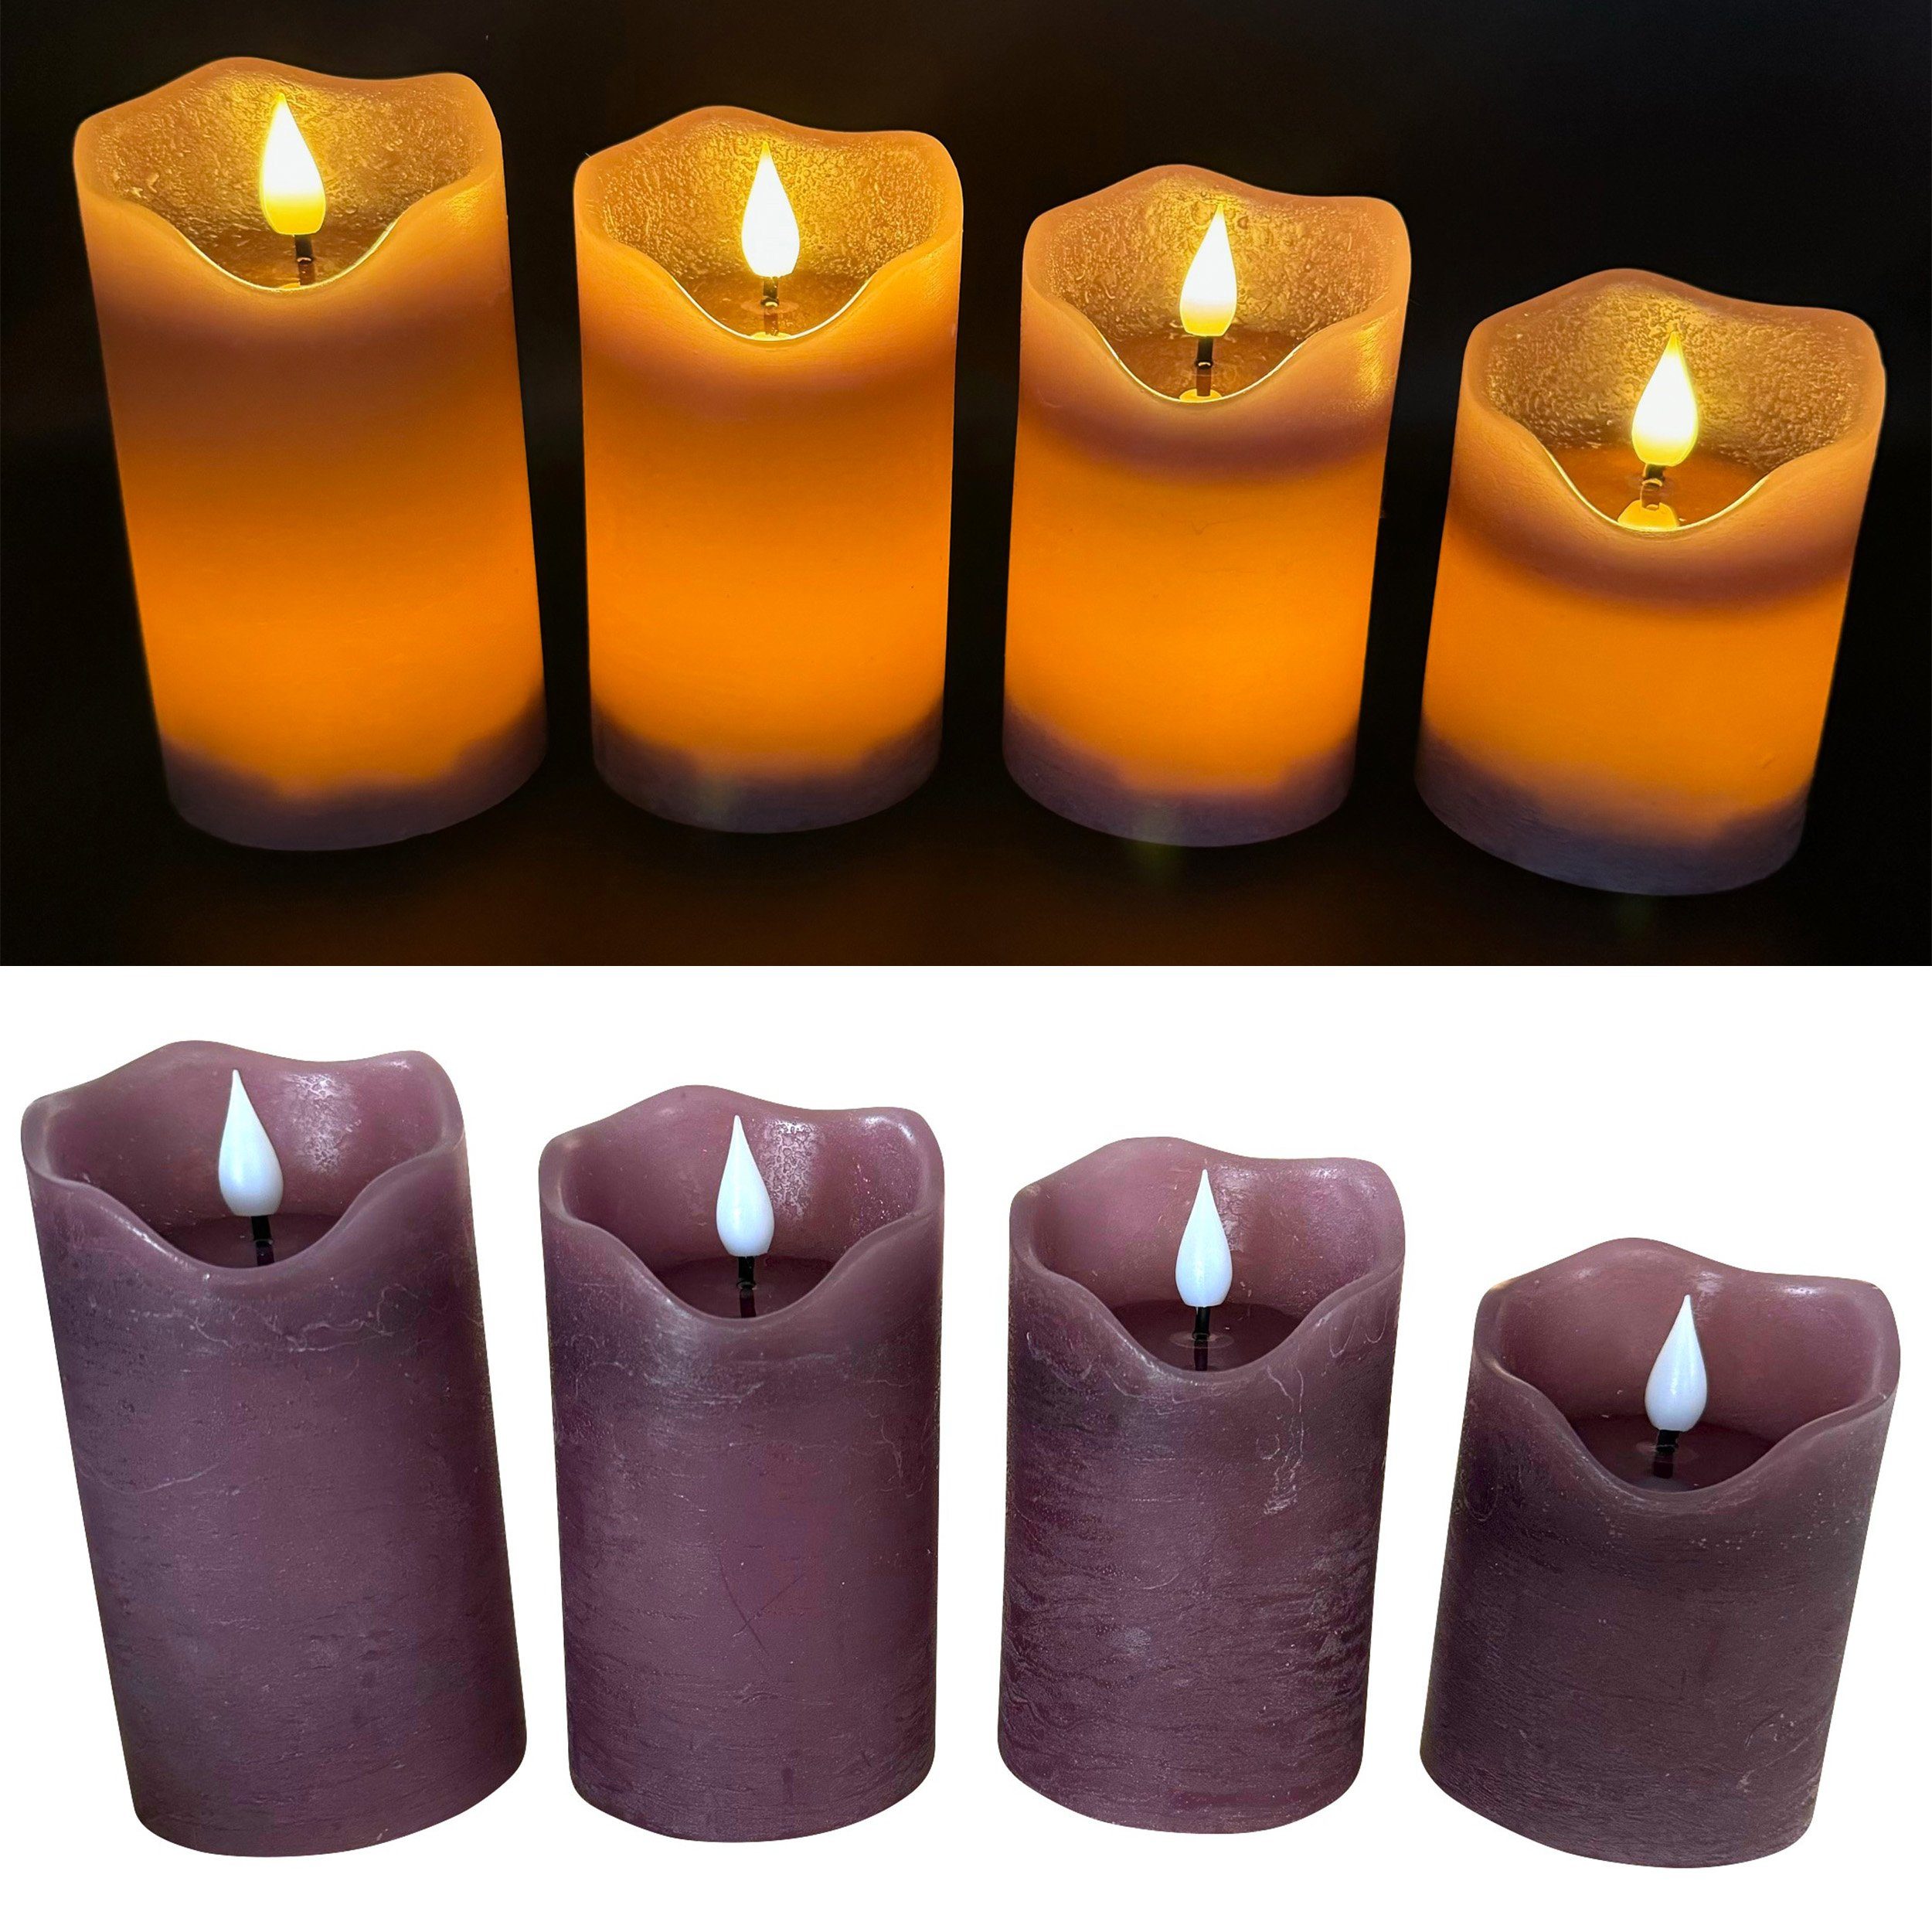 Online-Fuchs LED-Kerze 4 LED Kerzen im Set mit Dimmer, Timer und Fernbedienung - (Spiegelnde Flamme mit Docht), Creme, Rot, Grün, Lila, Altrosa